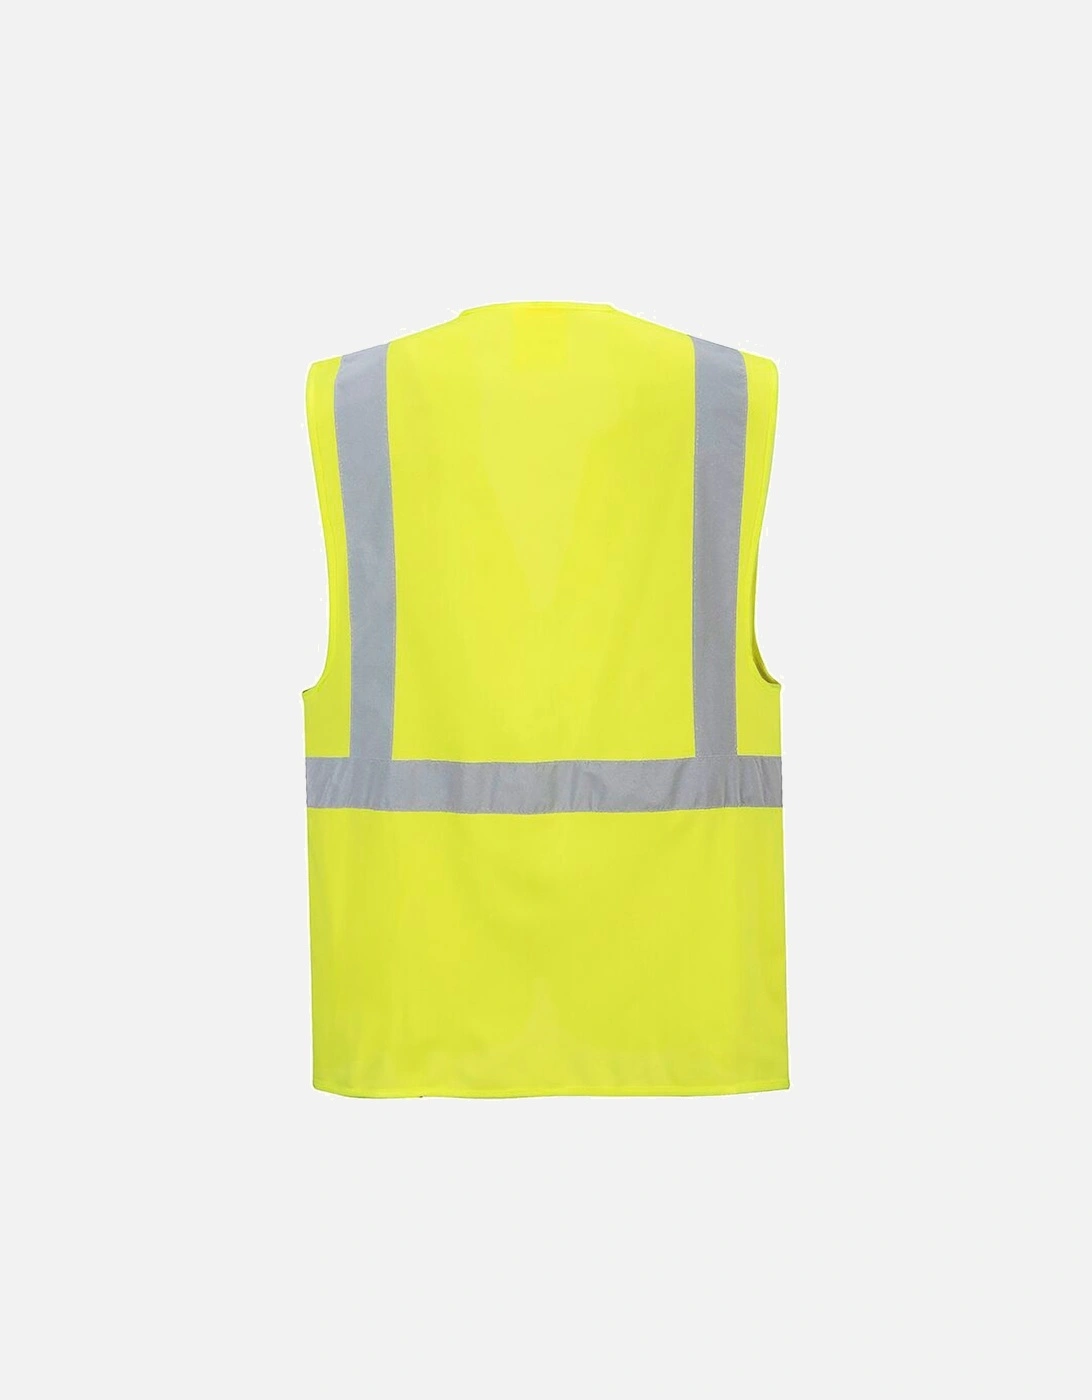 Hi Vis Executive / Manager Vest / Safetywear